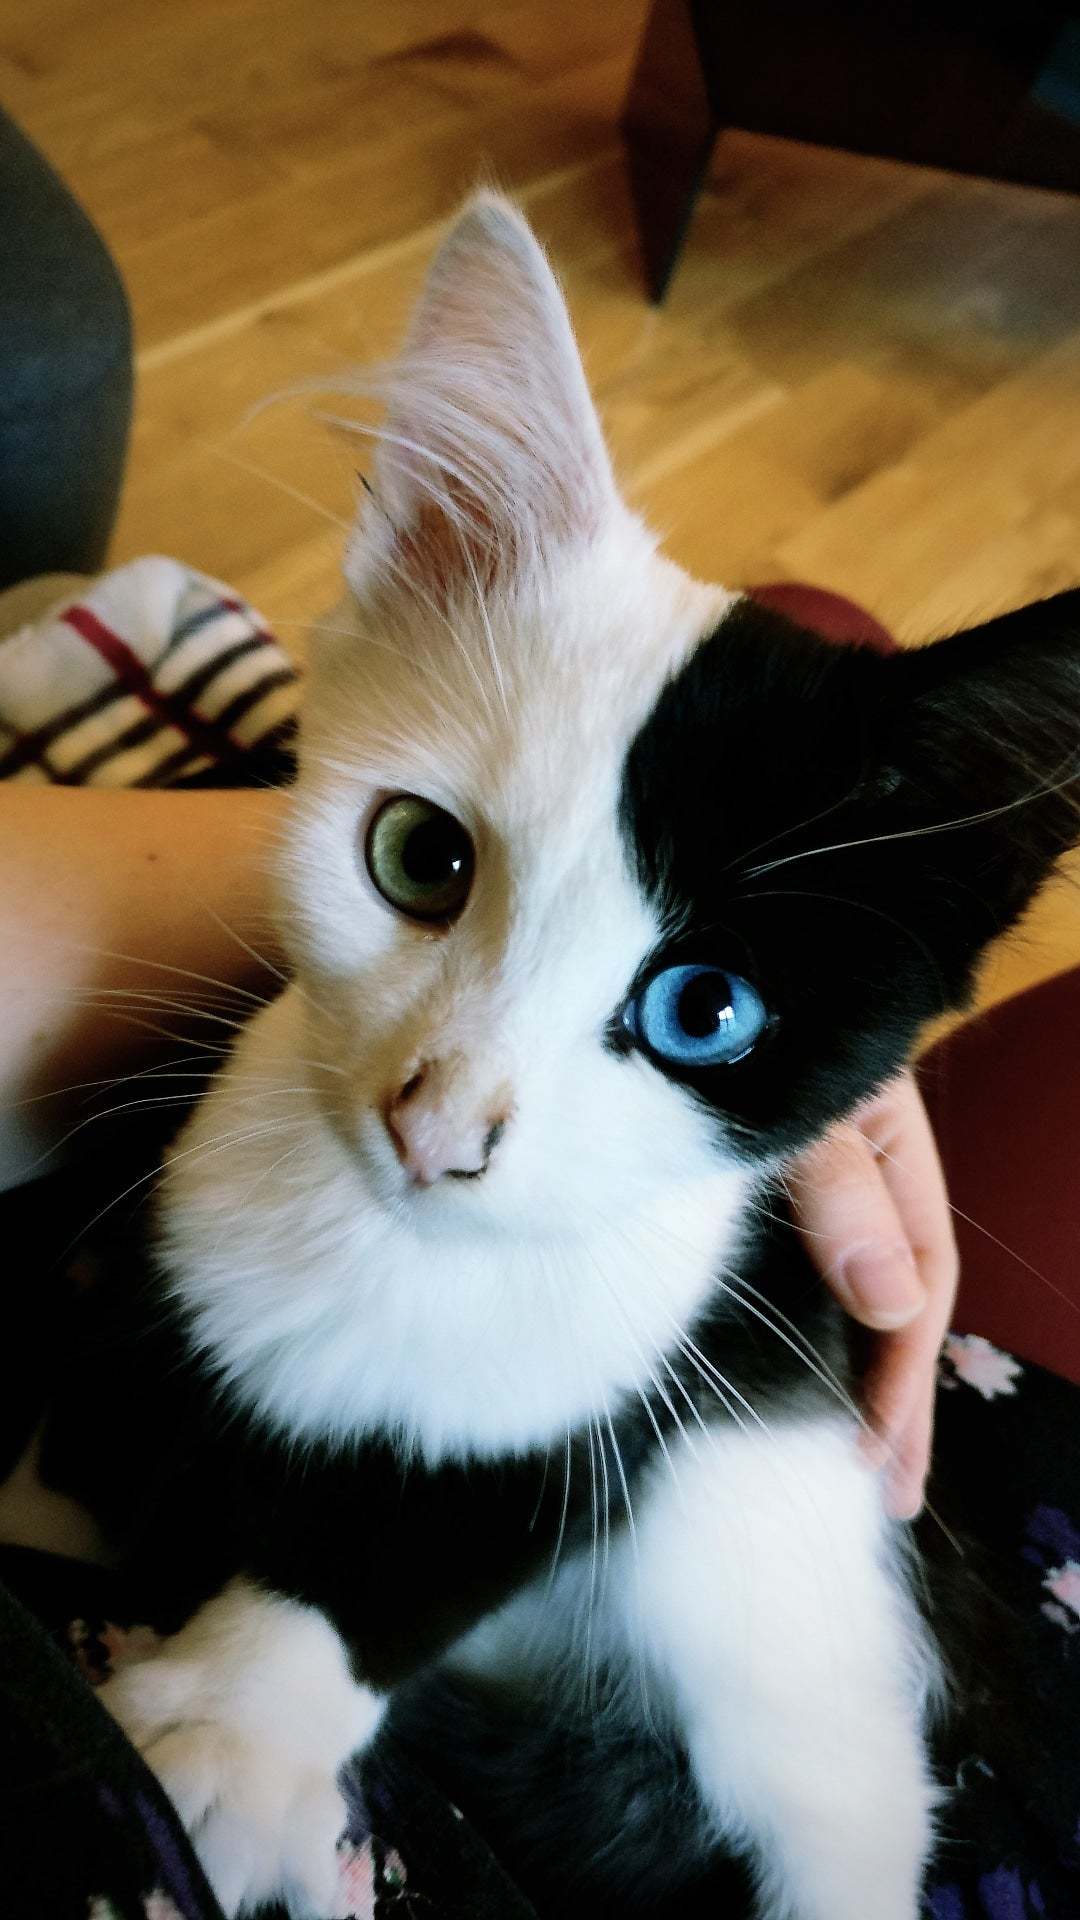 Handsome man - cat, Pets, Heterochromia